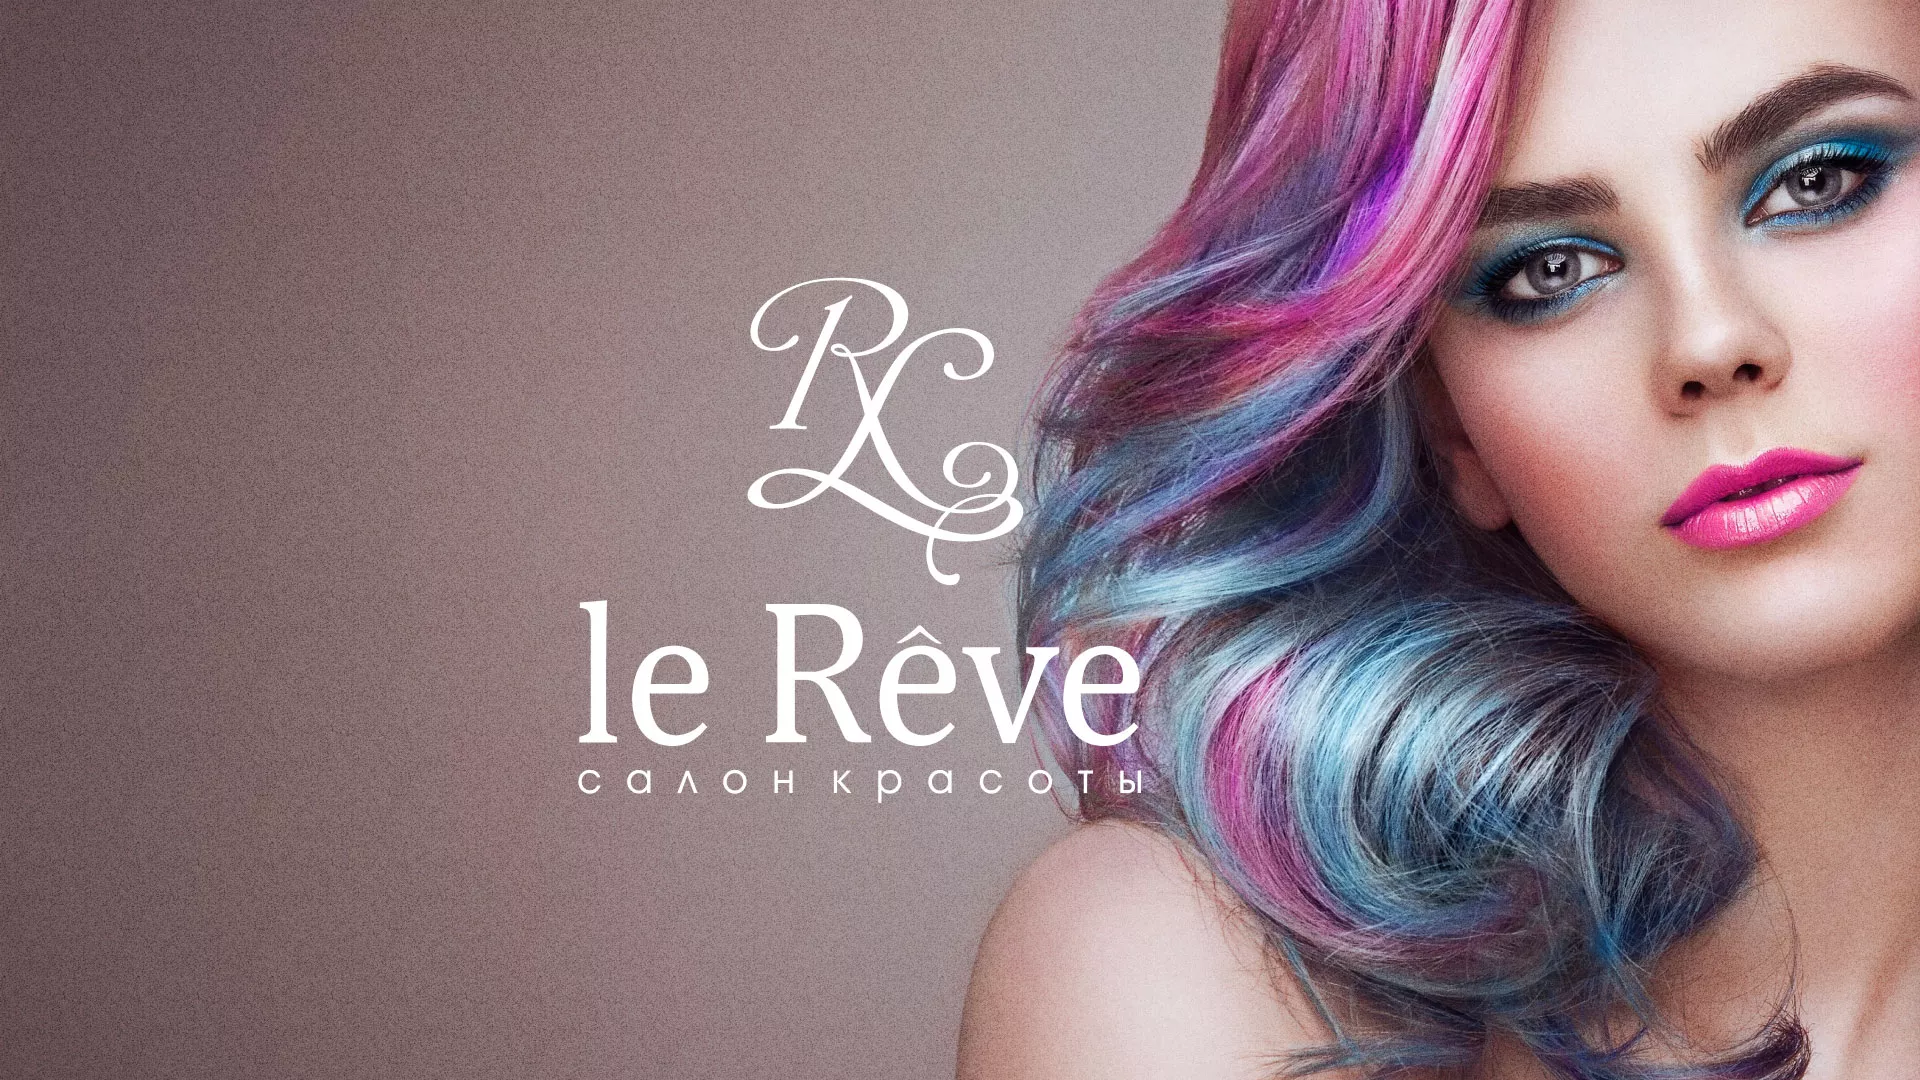 Создание сайта для салона красоты «Le Reve» в Новосибирске